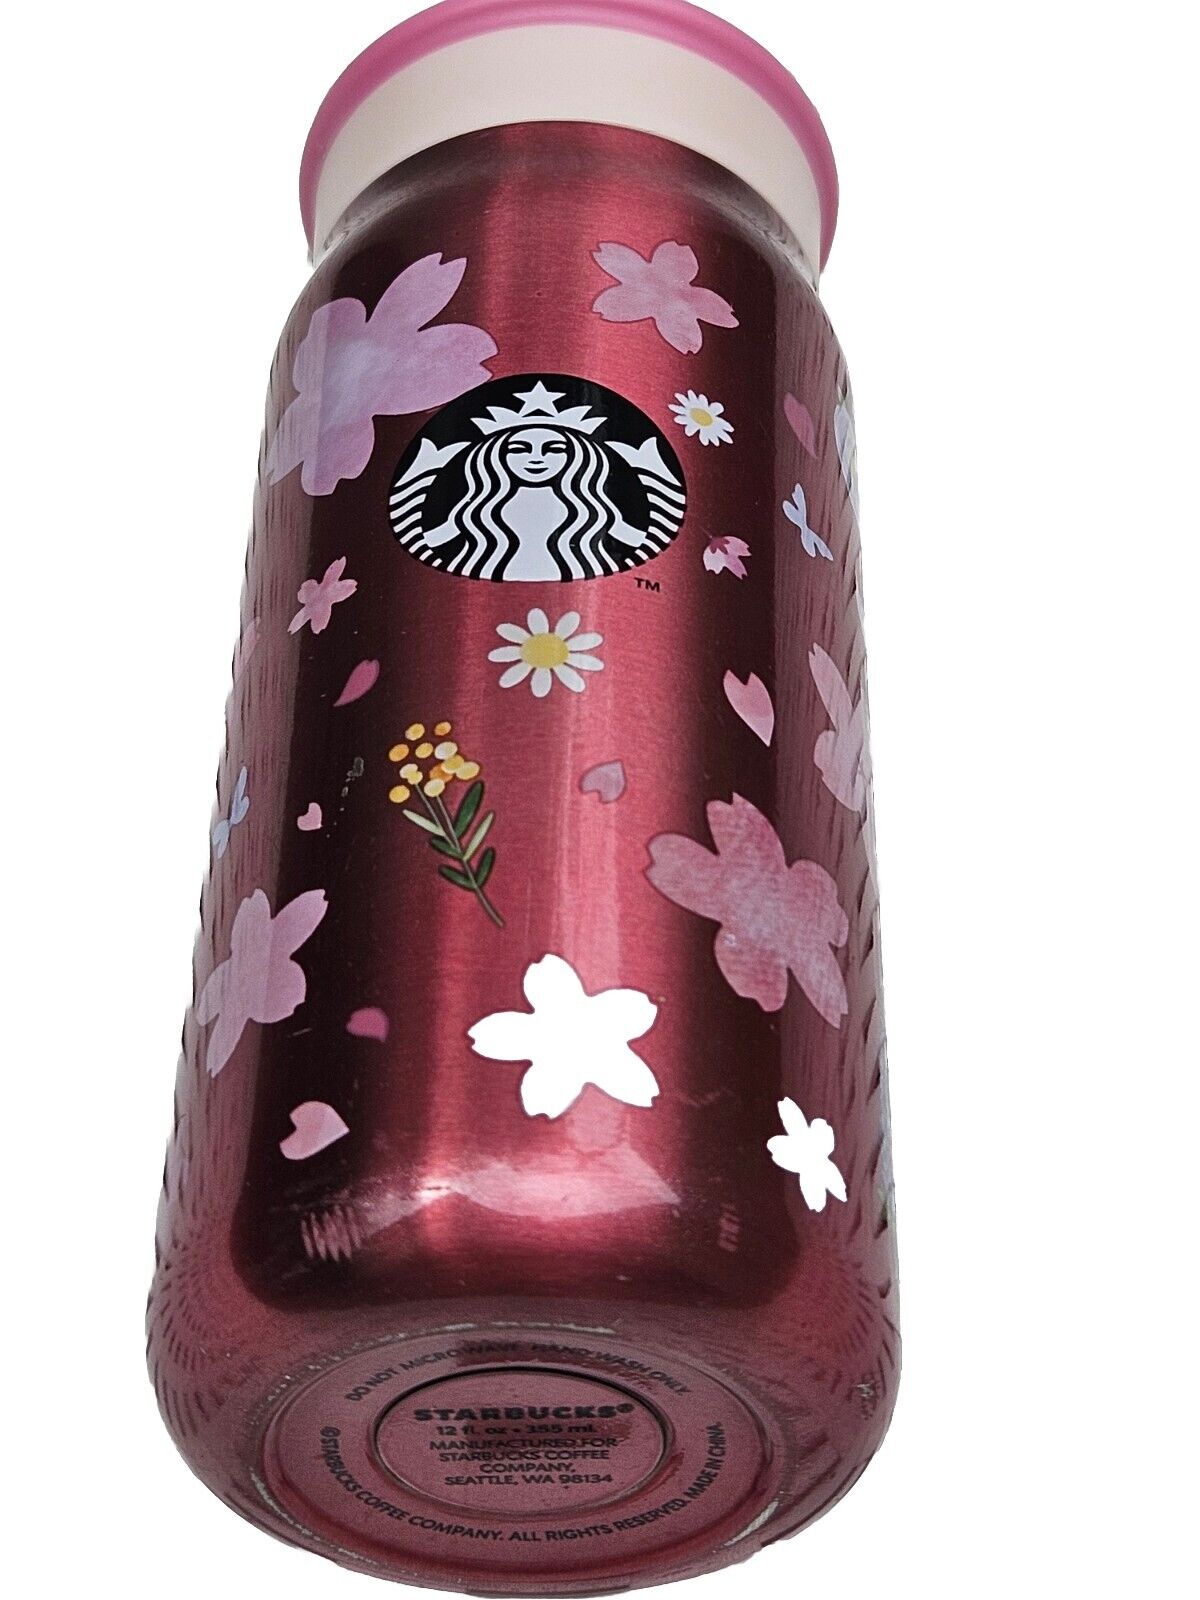 Starbucks Sakura Cherry Blossom 2021 stainless Stell tumbler 355ml 